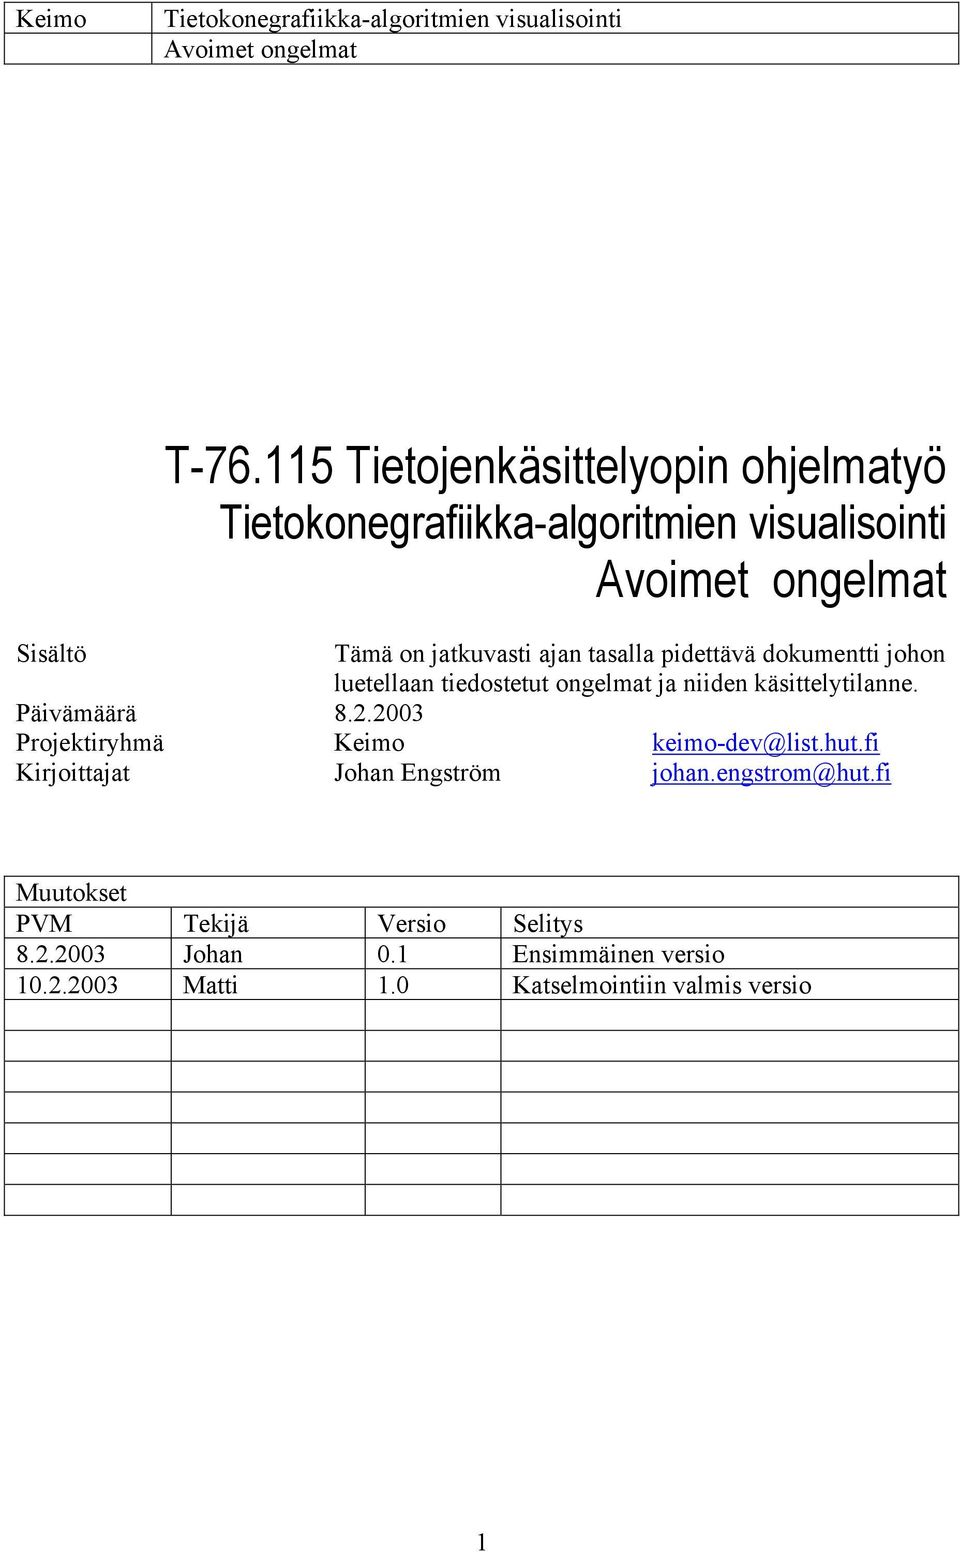 2003 Projektiryhmä Keimo keimo-dev@list.hut.fi Kirjoittajat Johan Engström johan.engstrom@hut.